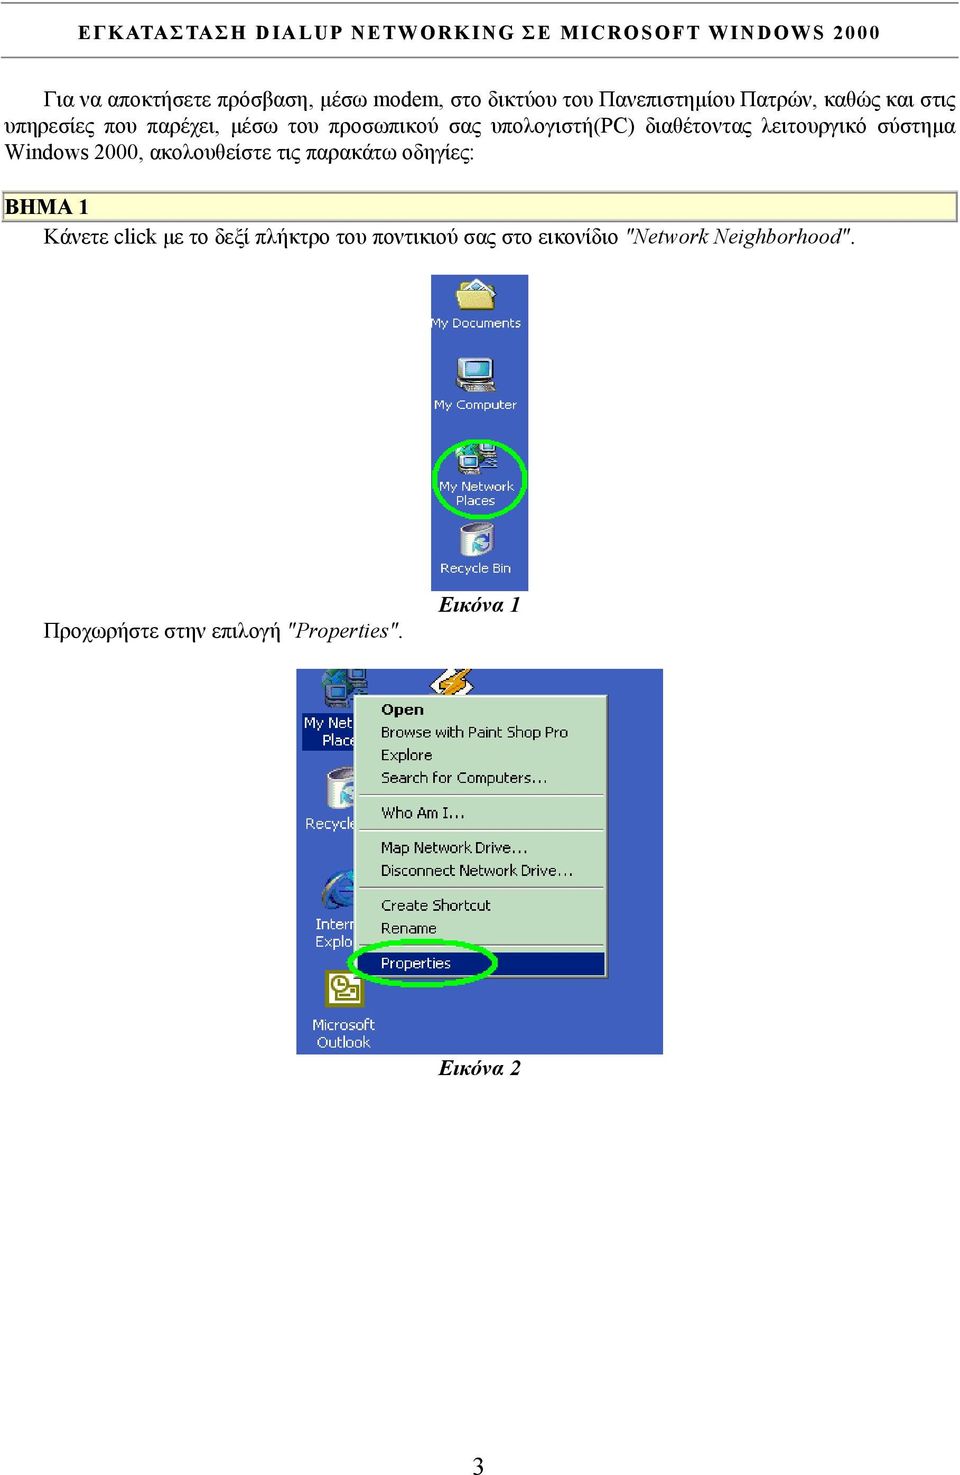 διαθέτοντας λειτουργικό σύστηµα Windows 2000, ακολουθείστε τις παρακάτω οδηγίες: BHMA 1 Κάνετε click µε το